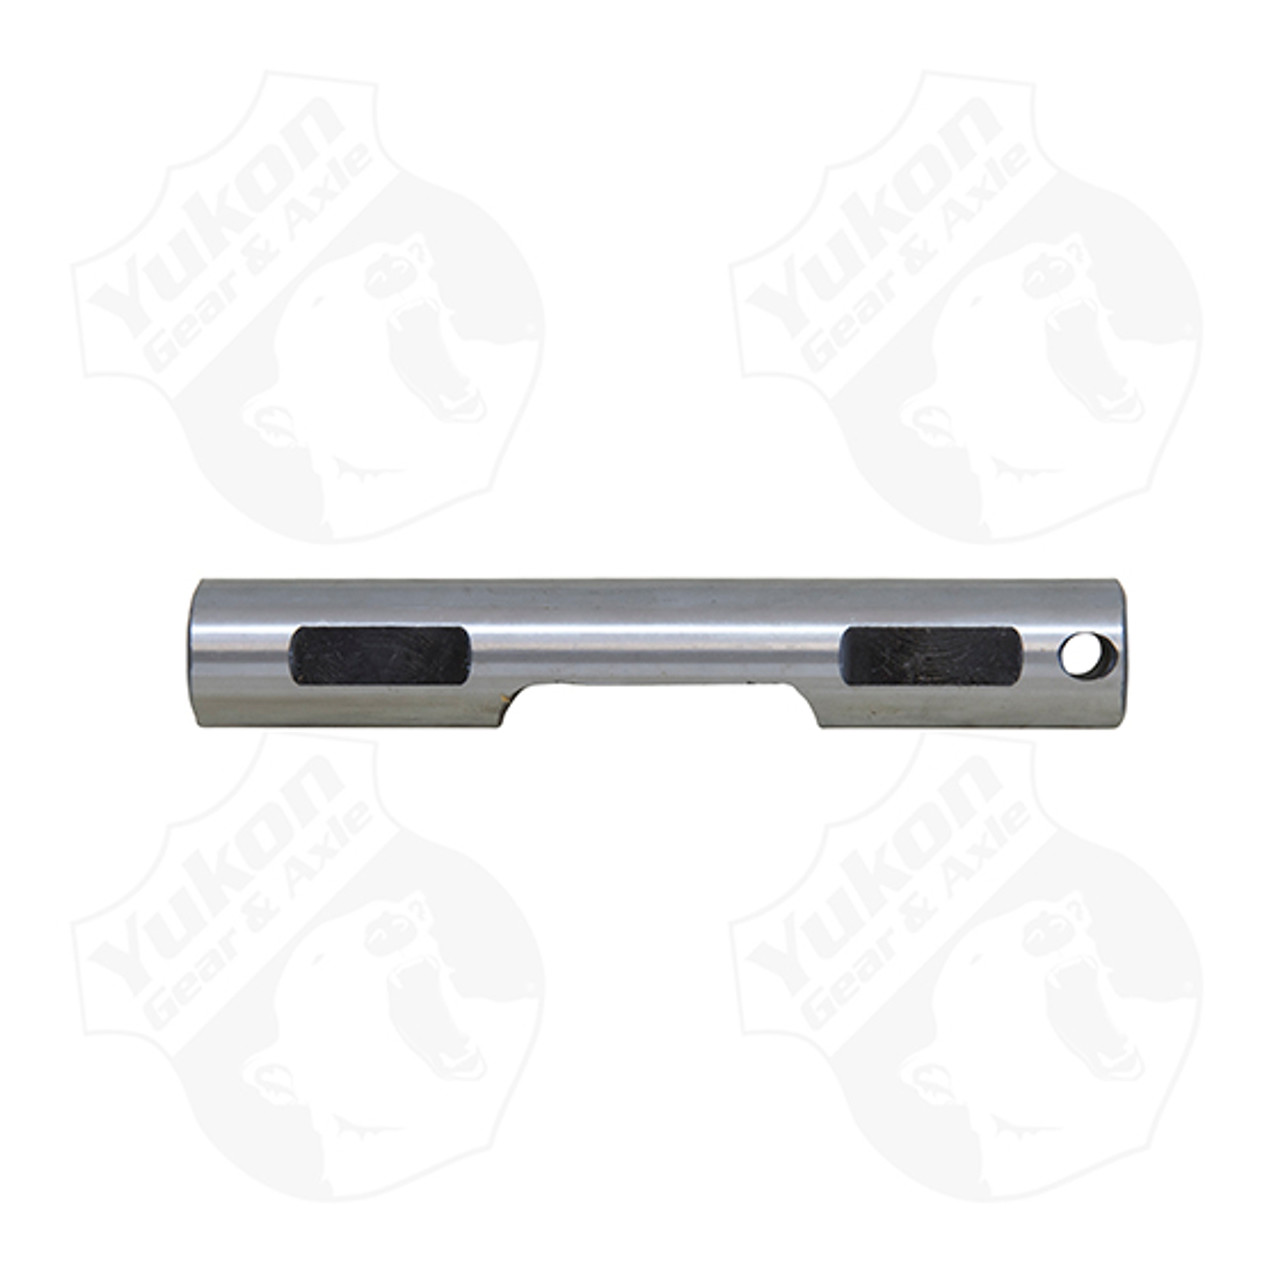 Cross pin shaft for standard open Chrysler 9.25